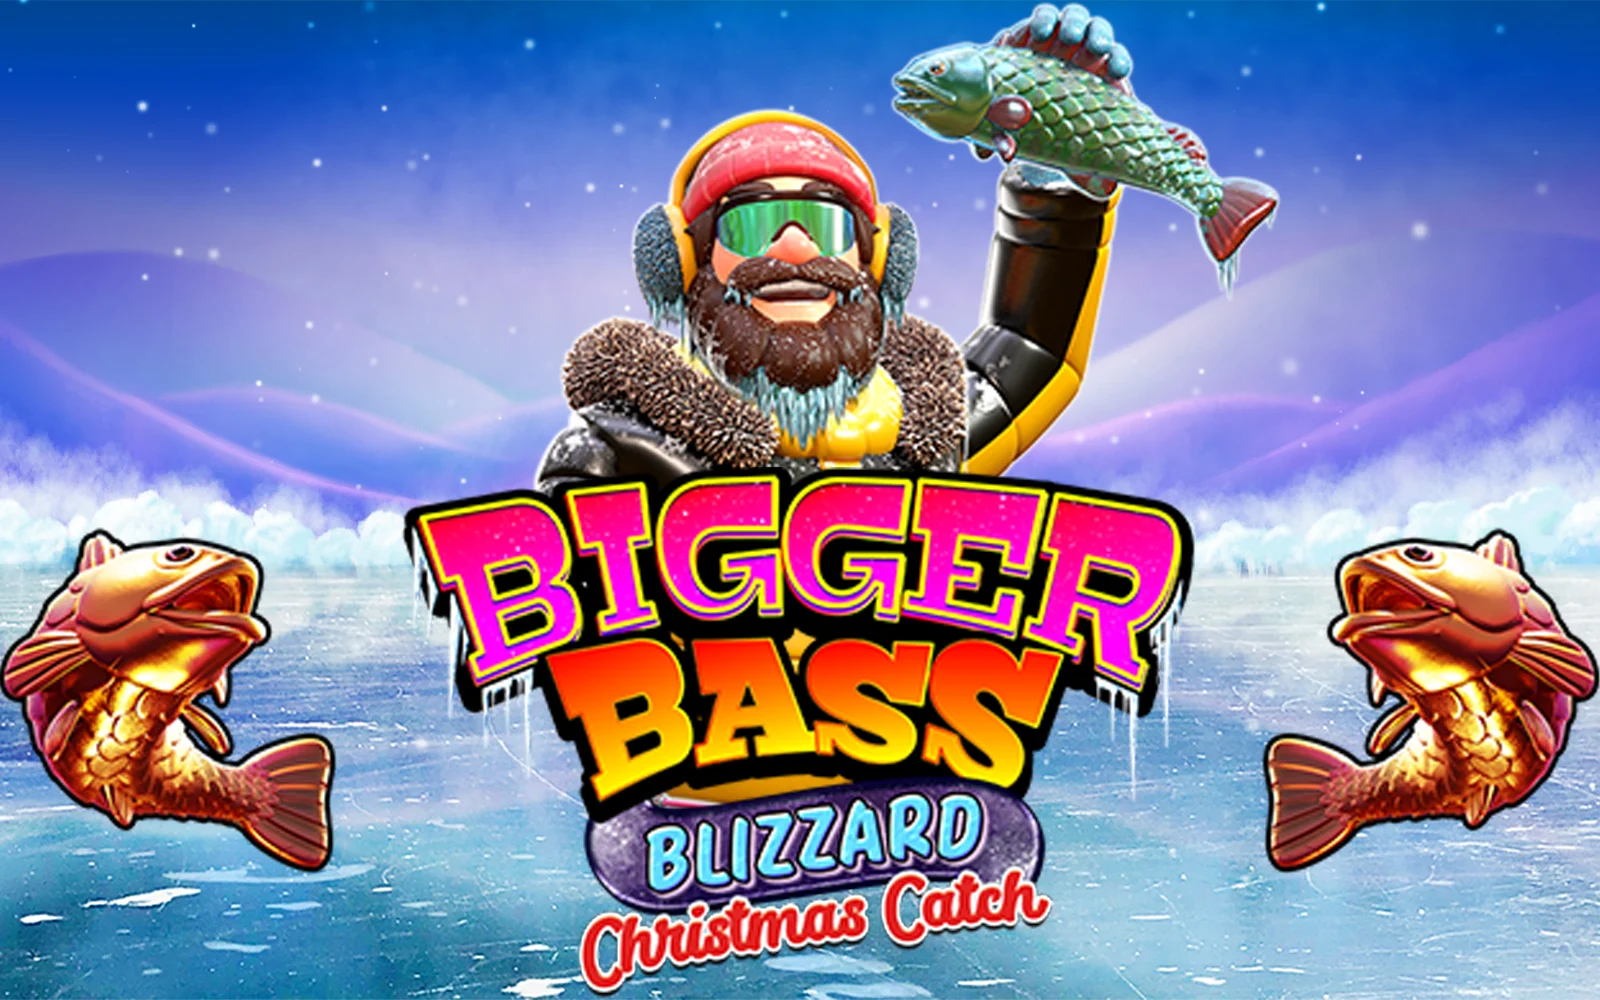 เล่น Bigger Bass Blizzard - Christmas Catch™ บนคาสิโนออนไลน์ Starcasino.be